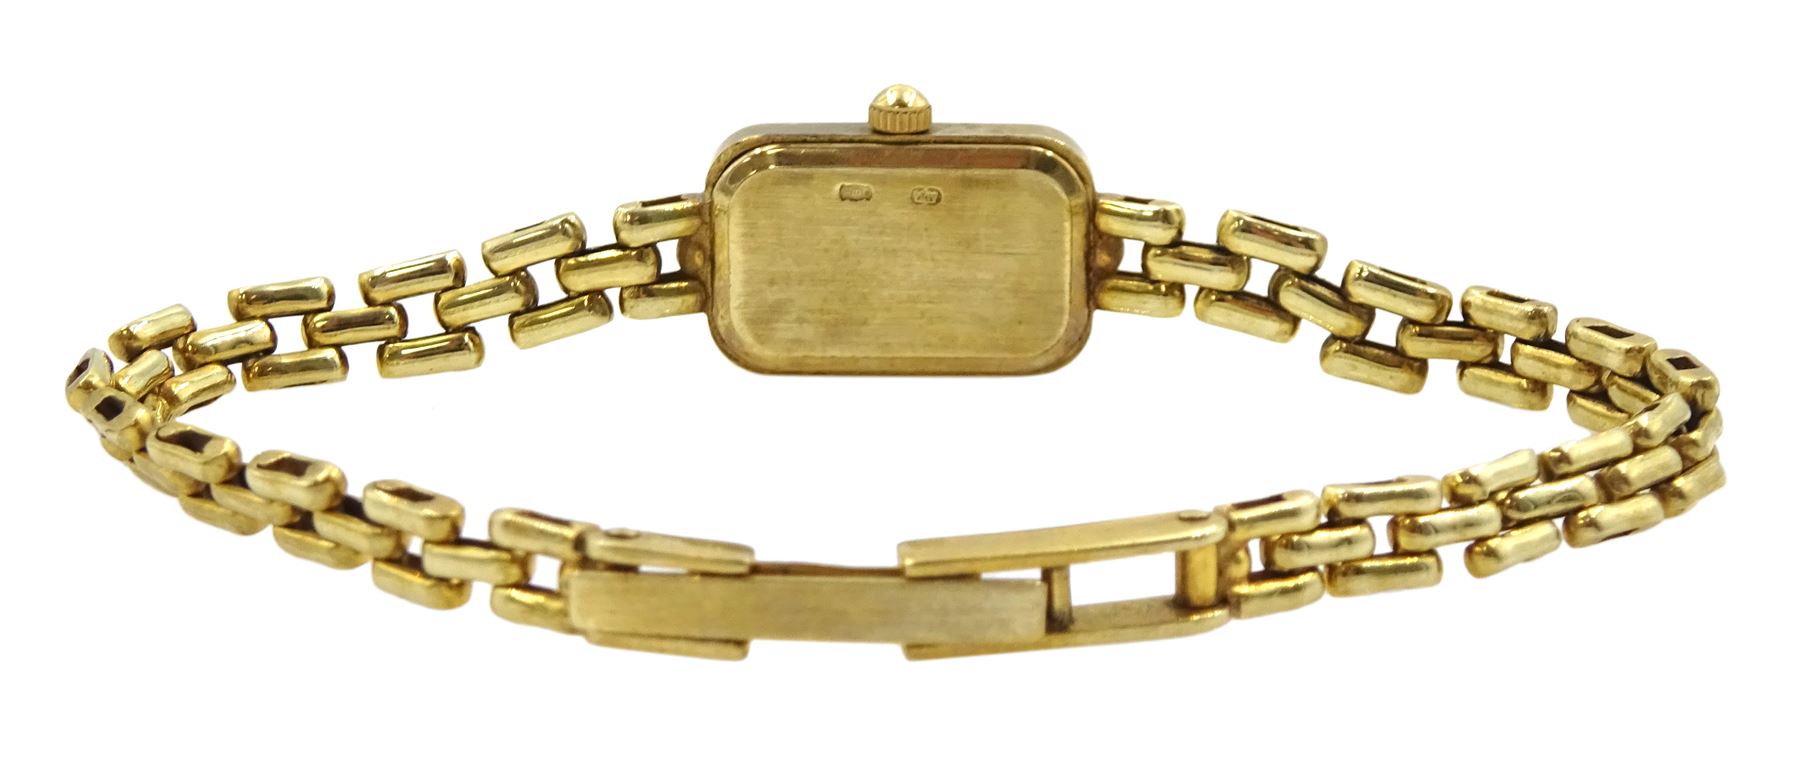 Focus ladies 9ct gold quartz wristwatch - Image 2 of 3